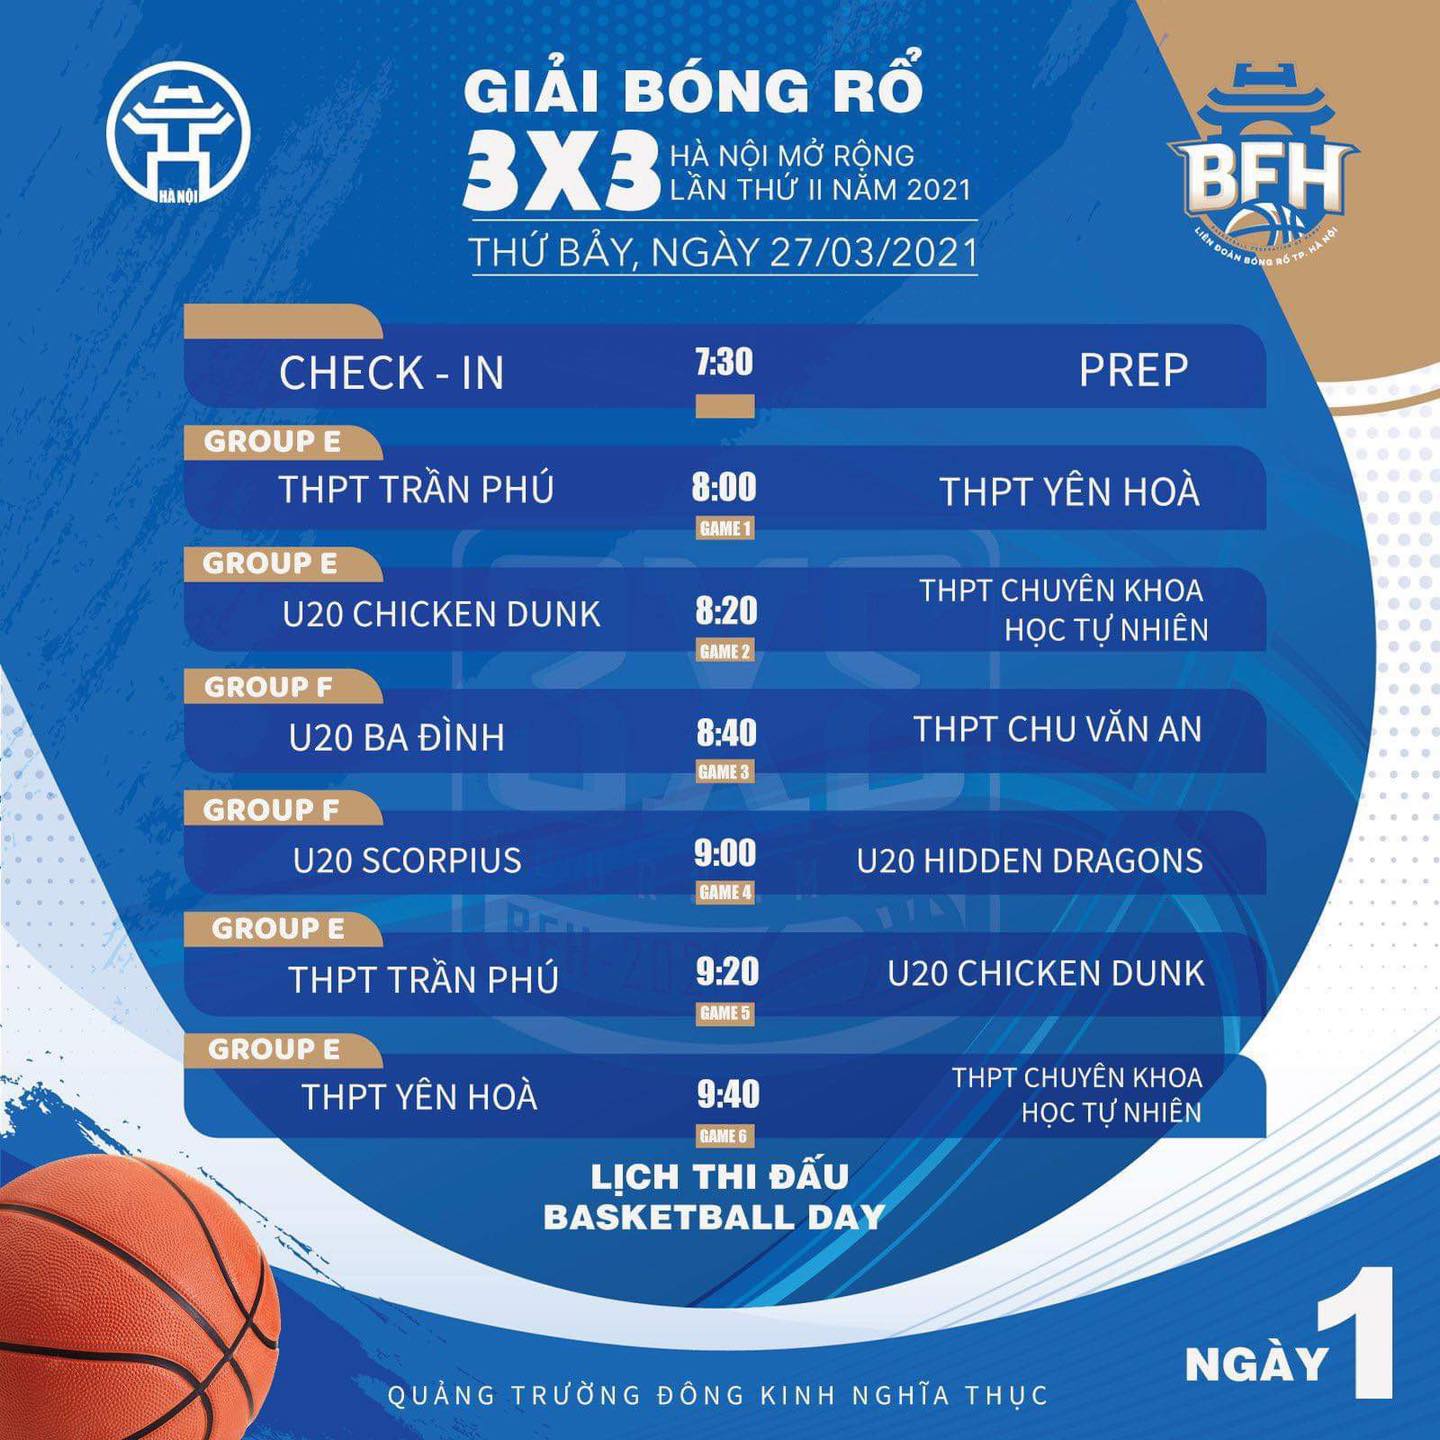 Lịch thi đấu giải bóng rổ 3x3 Hà Nội mở rộng lần 2 năm 2021 - Ảnh 2